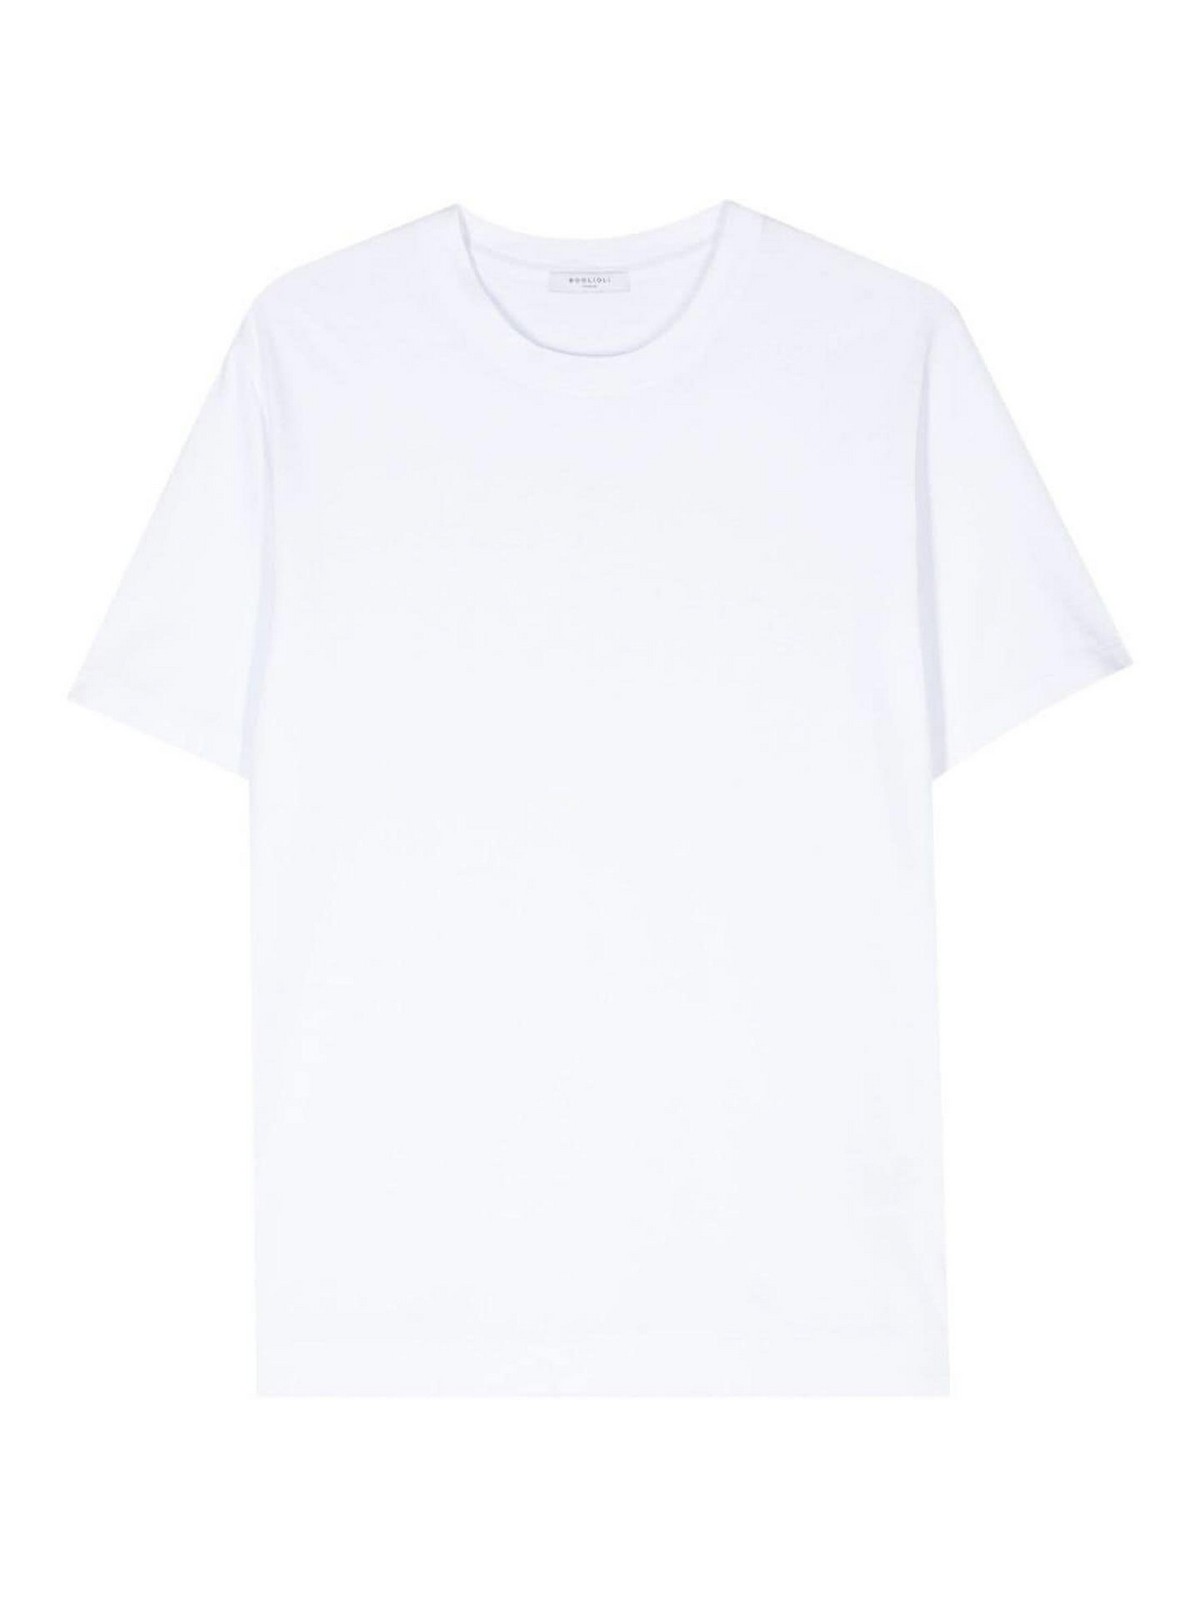 Boglioli Crew-neck Cotton T-shirt In White Colour